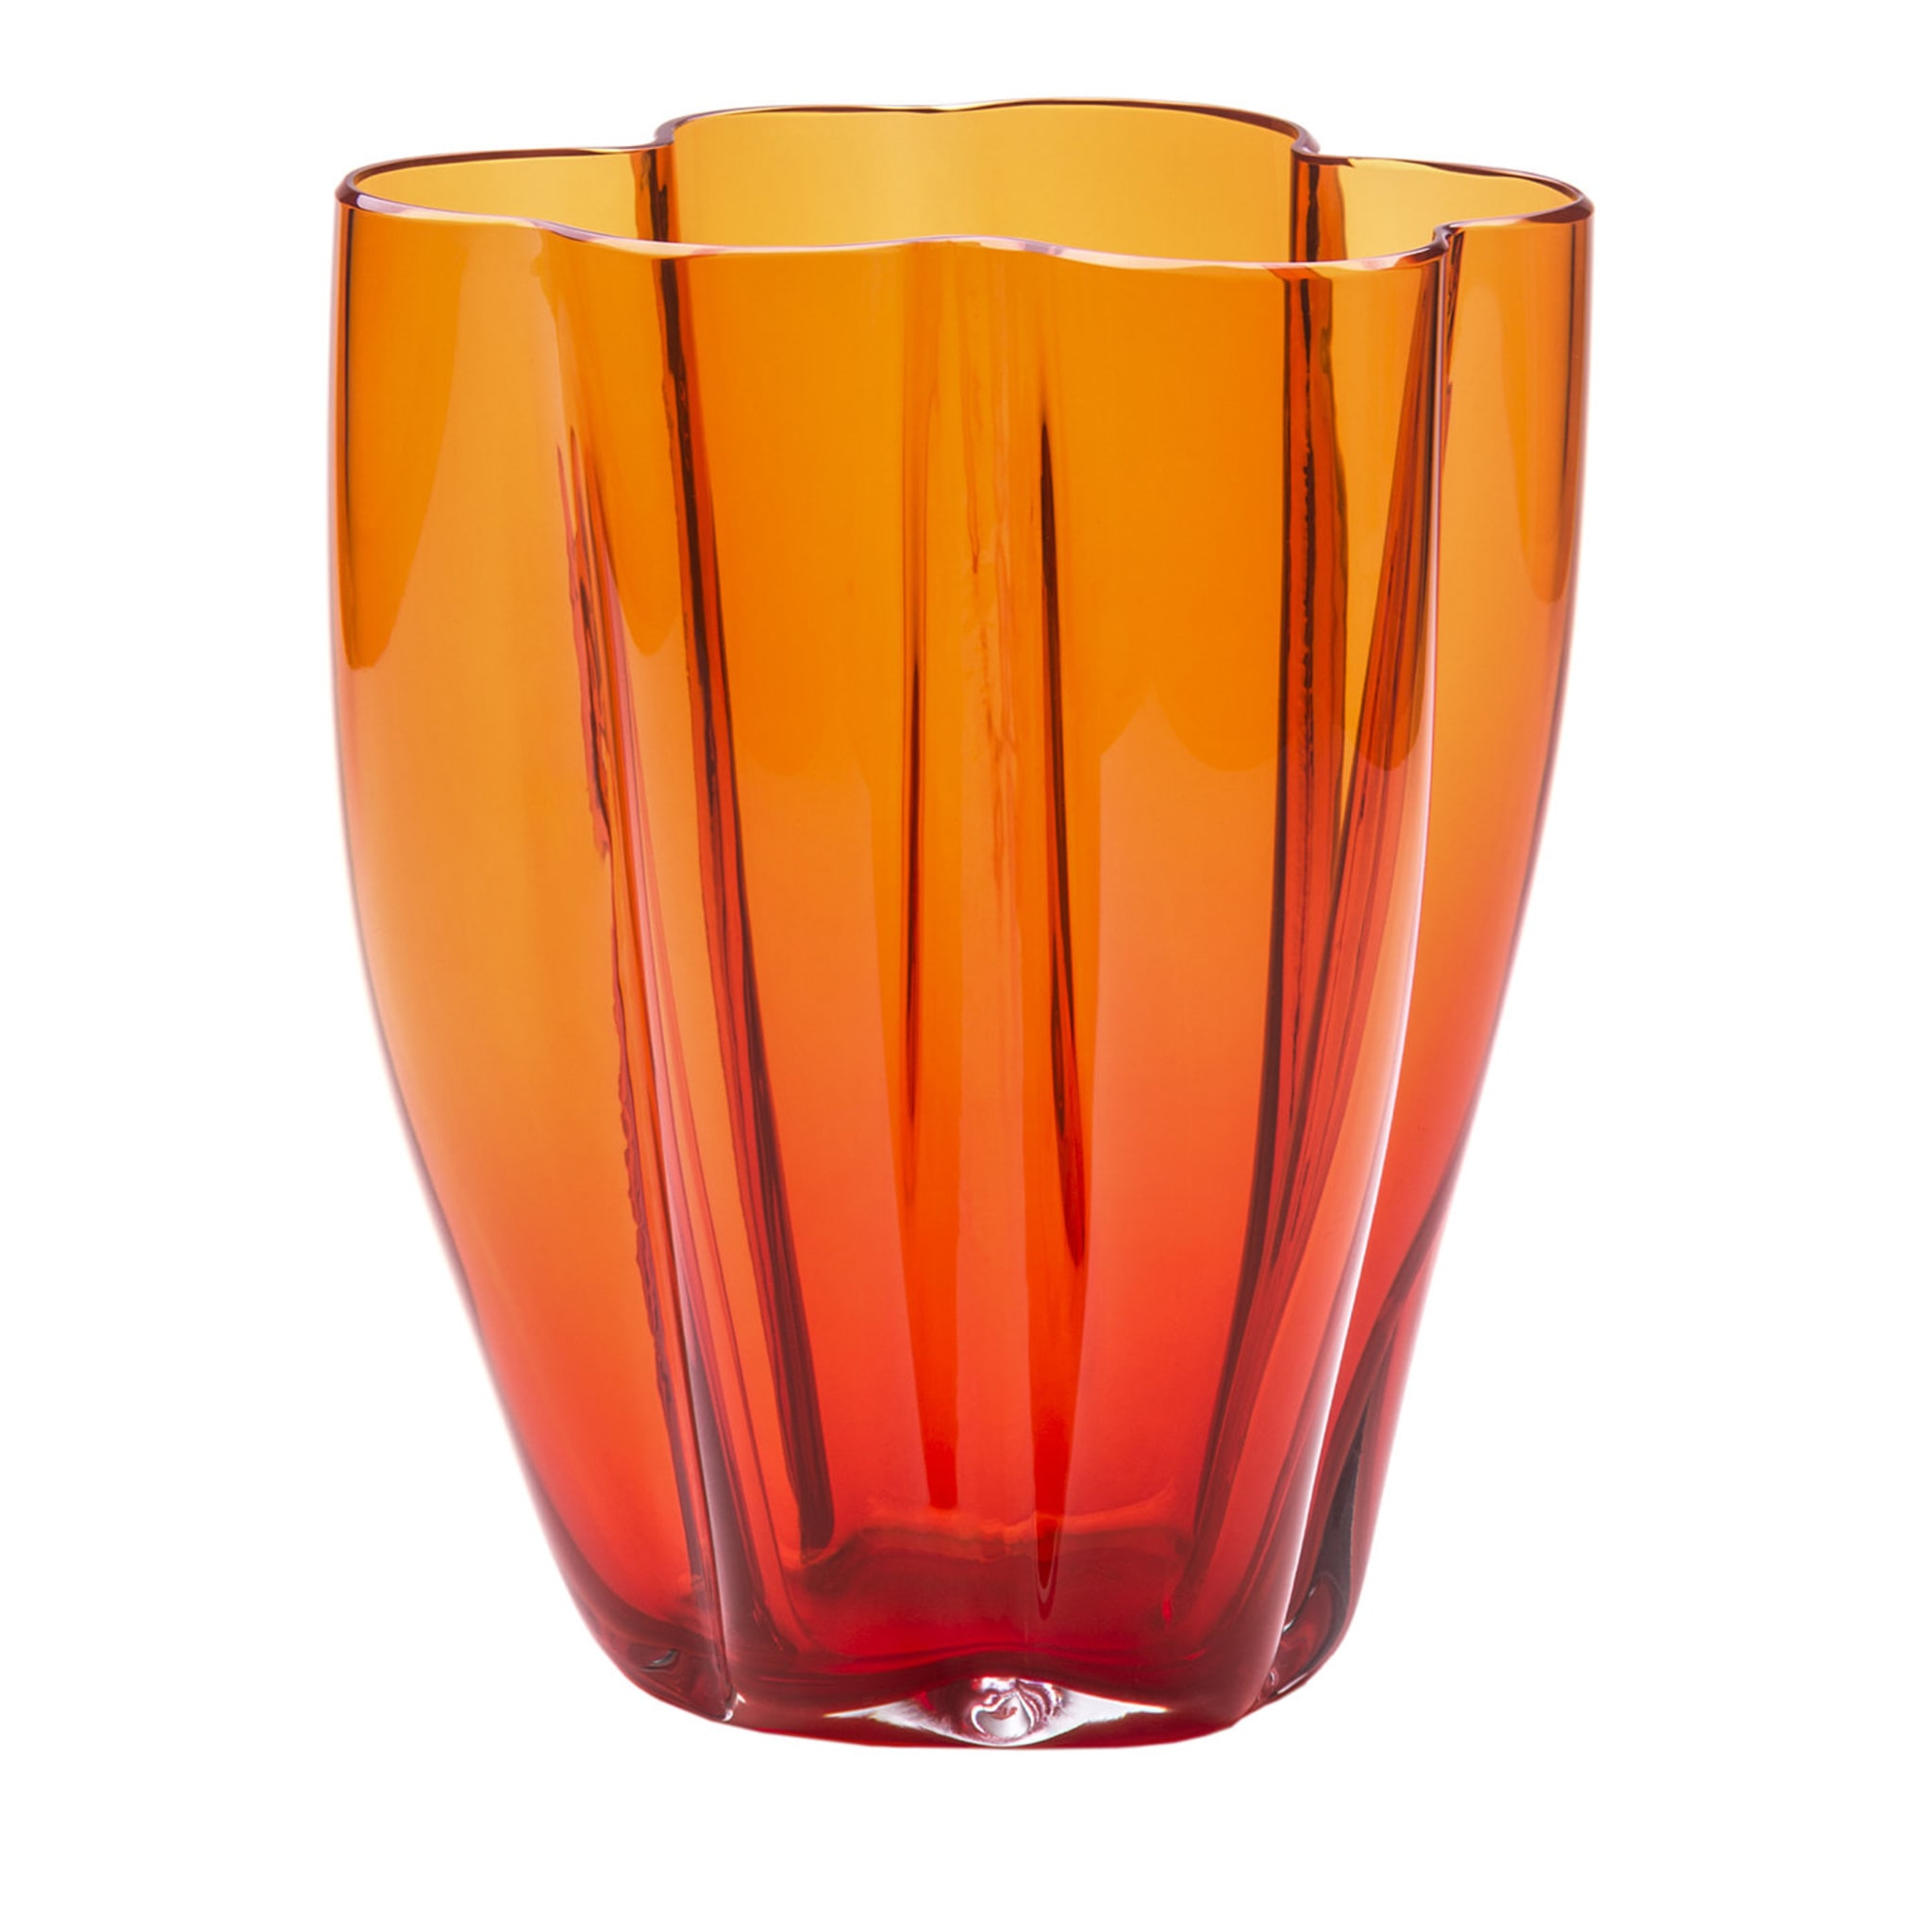 Petalo Orange Small Vase - Main view